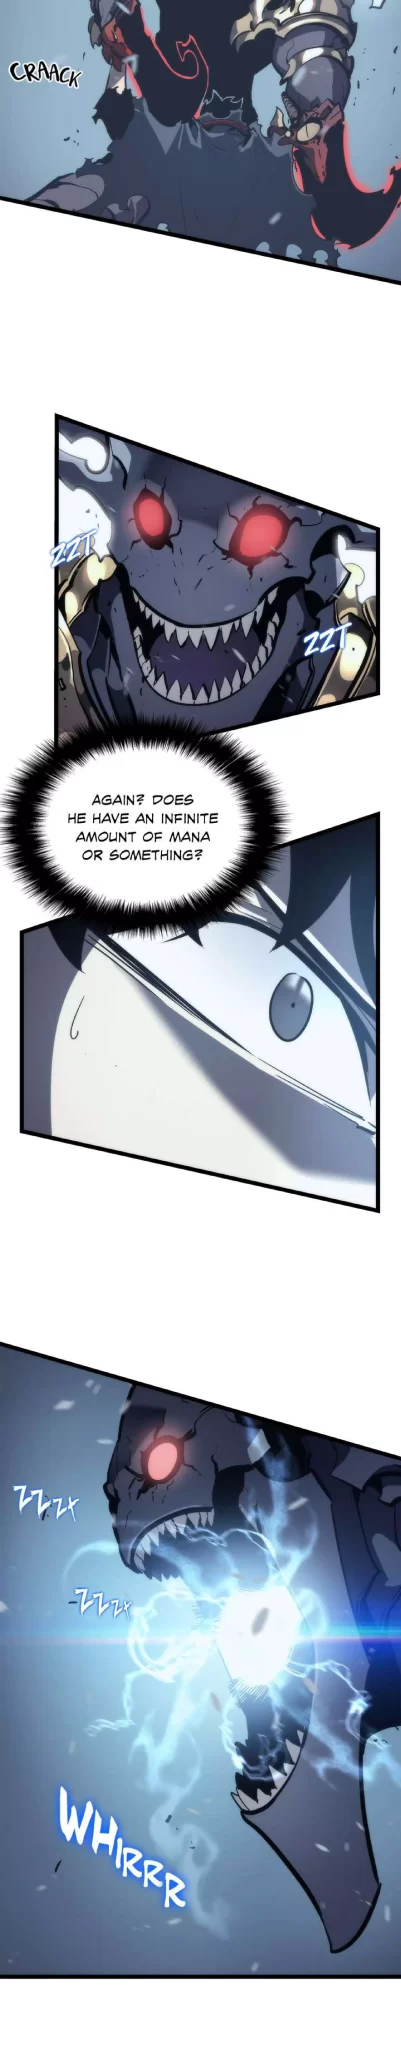 Solo Leveling Manga Manga Chapter - 87 - image 29